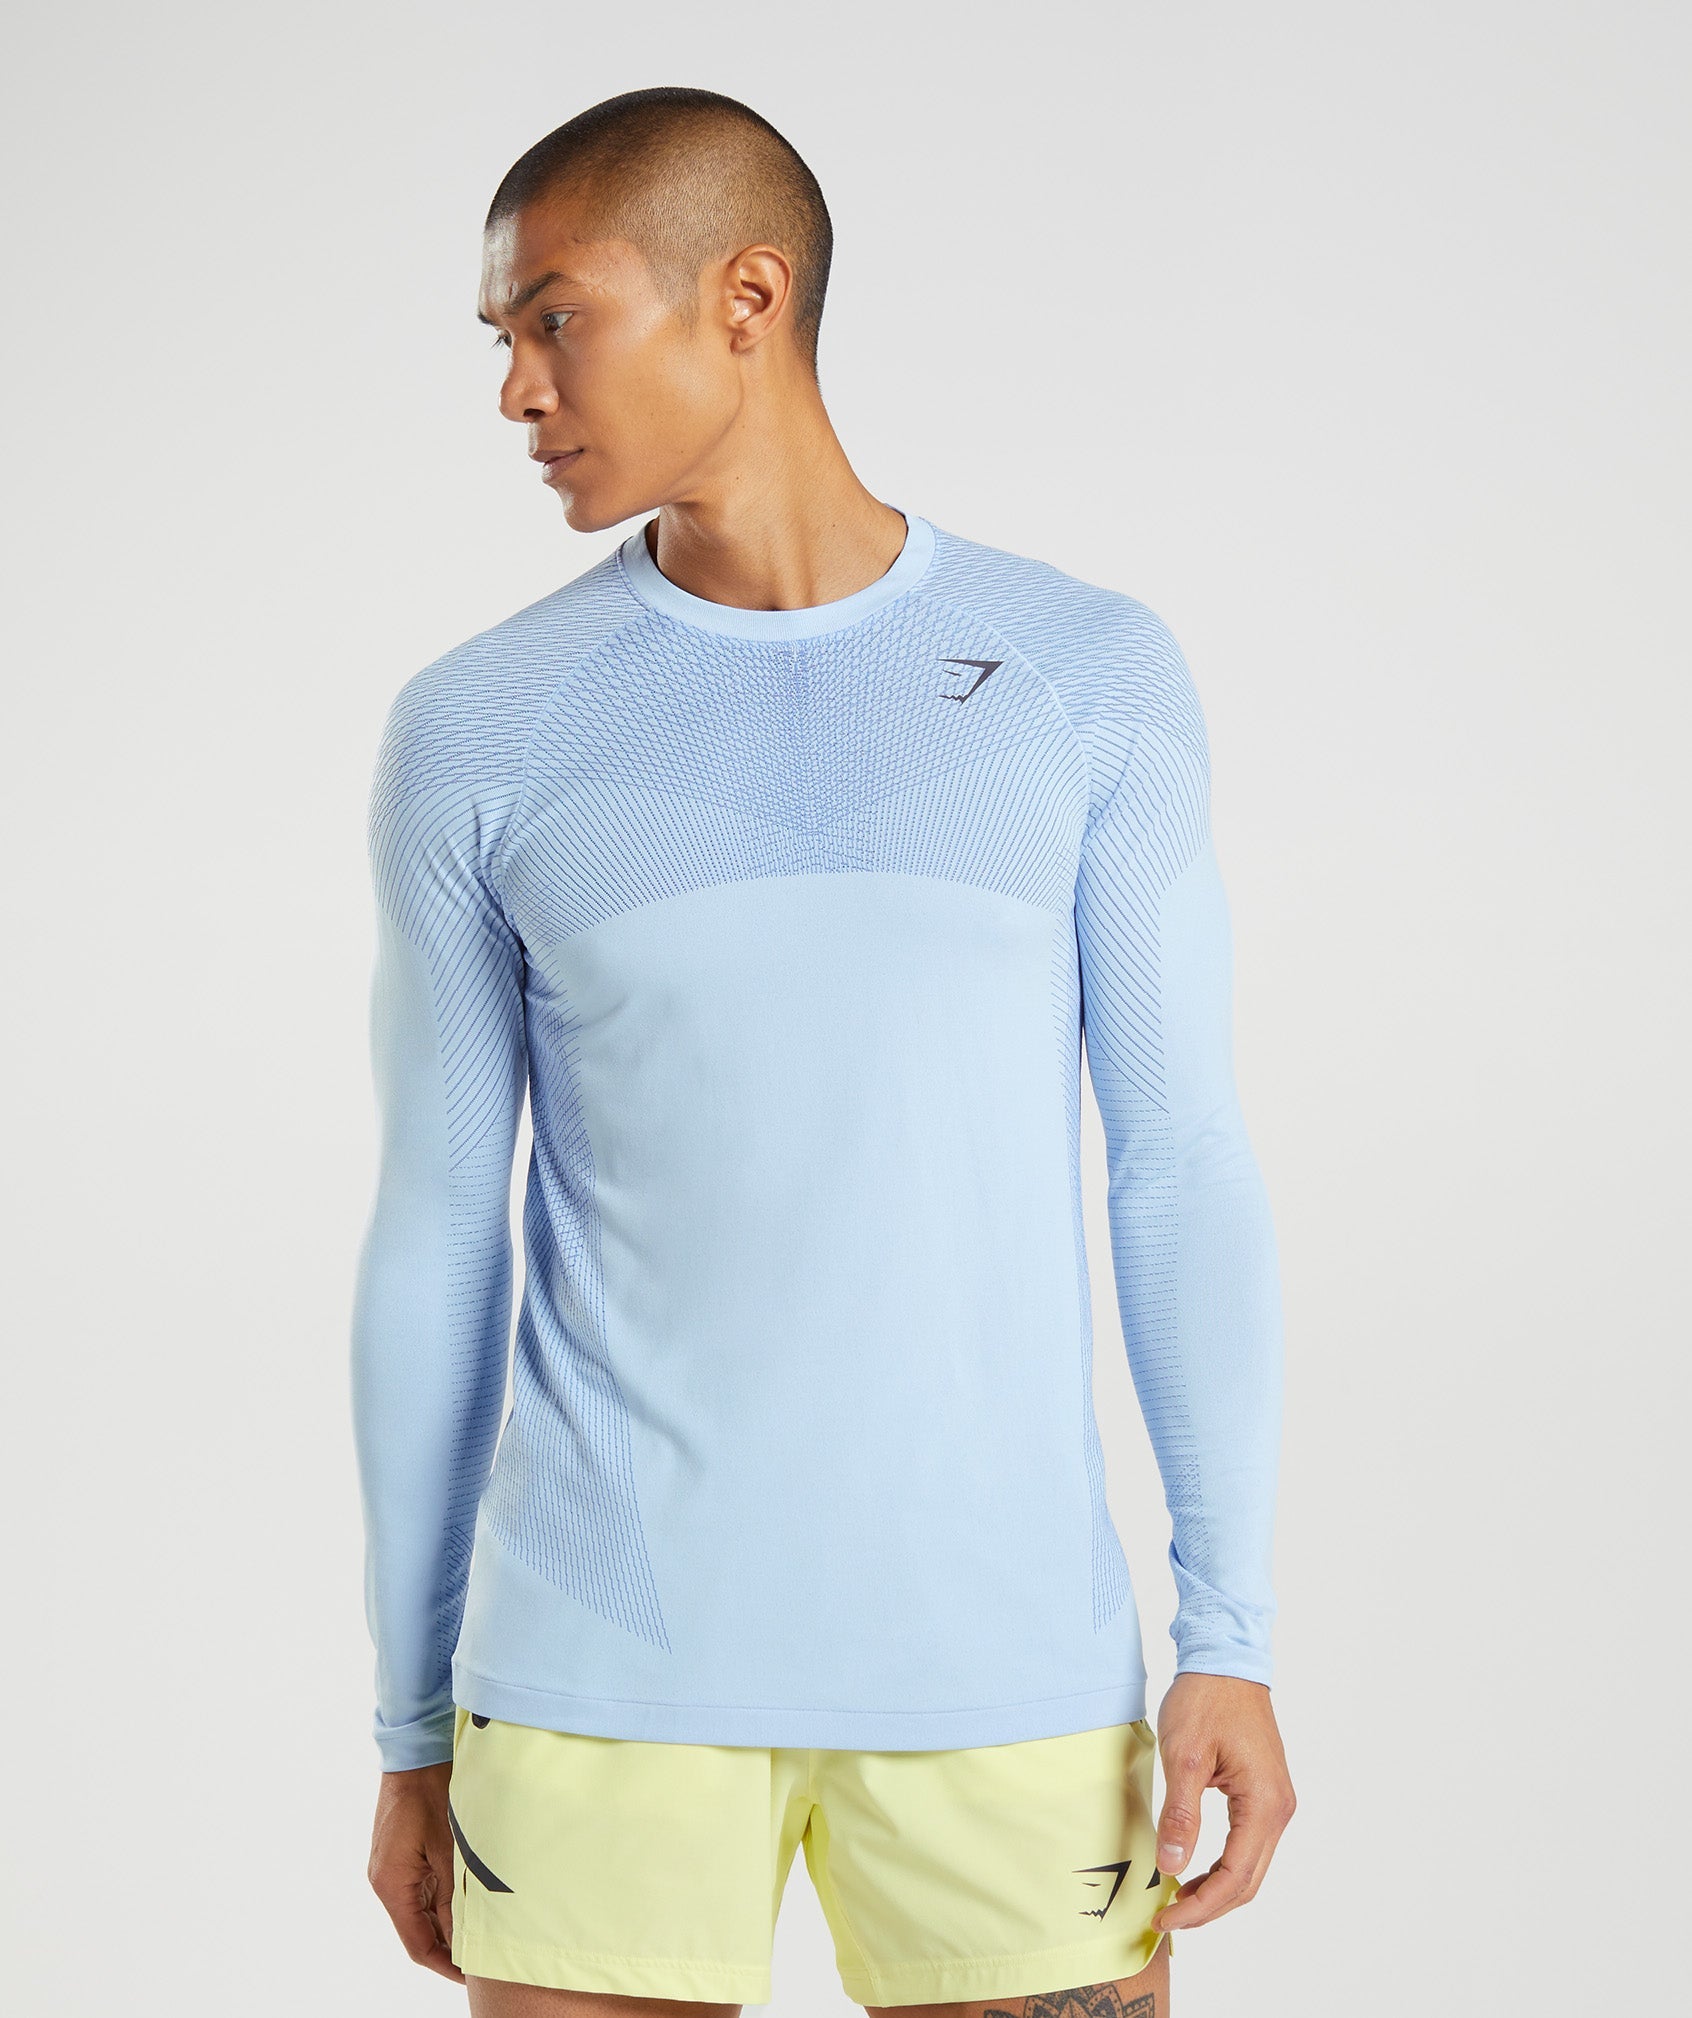 Apex Seamless Long Sleeve T-Shirt in Linen Blue/Court Blue - view 1